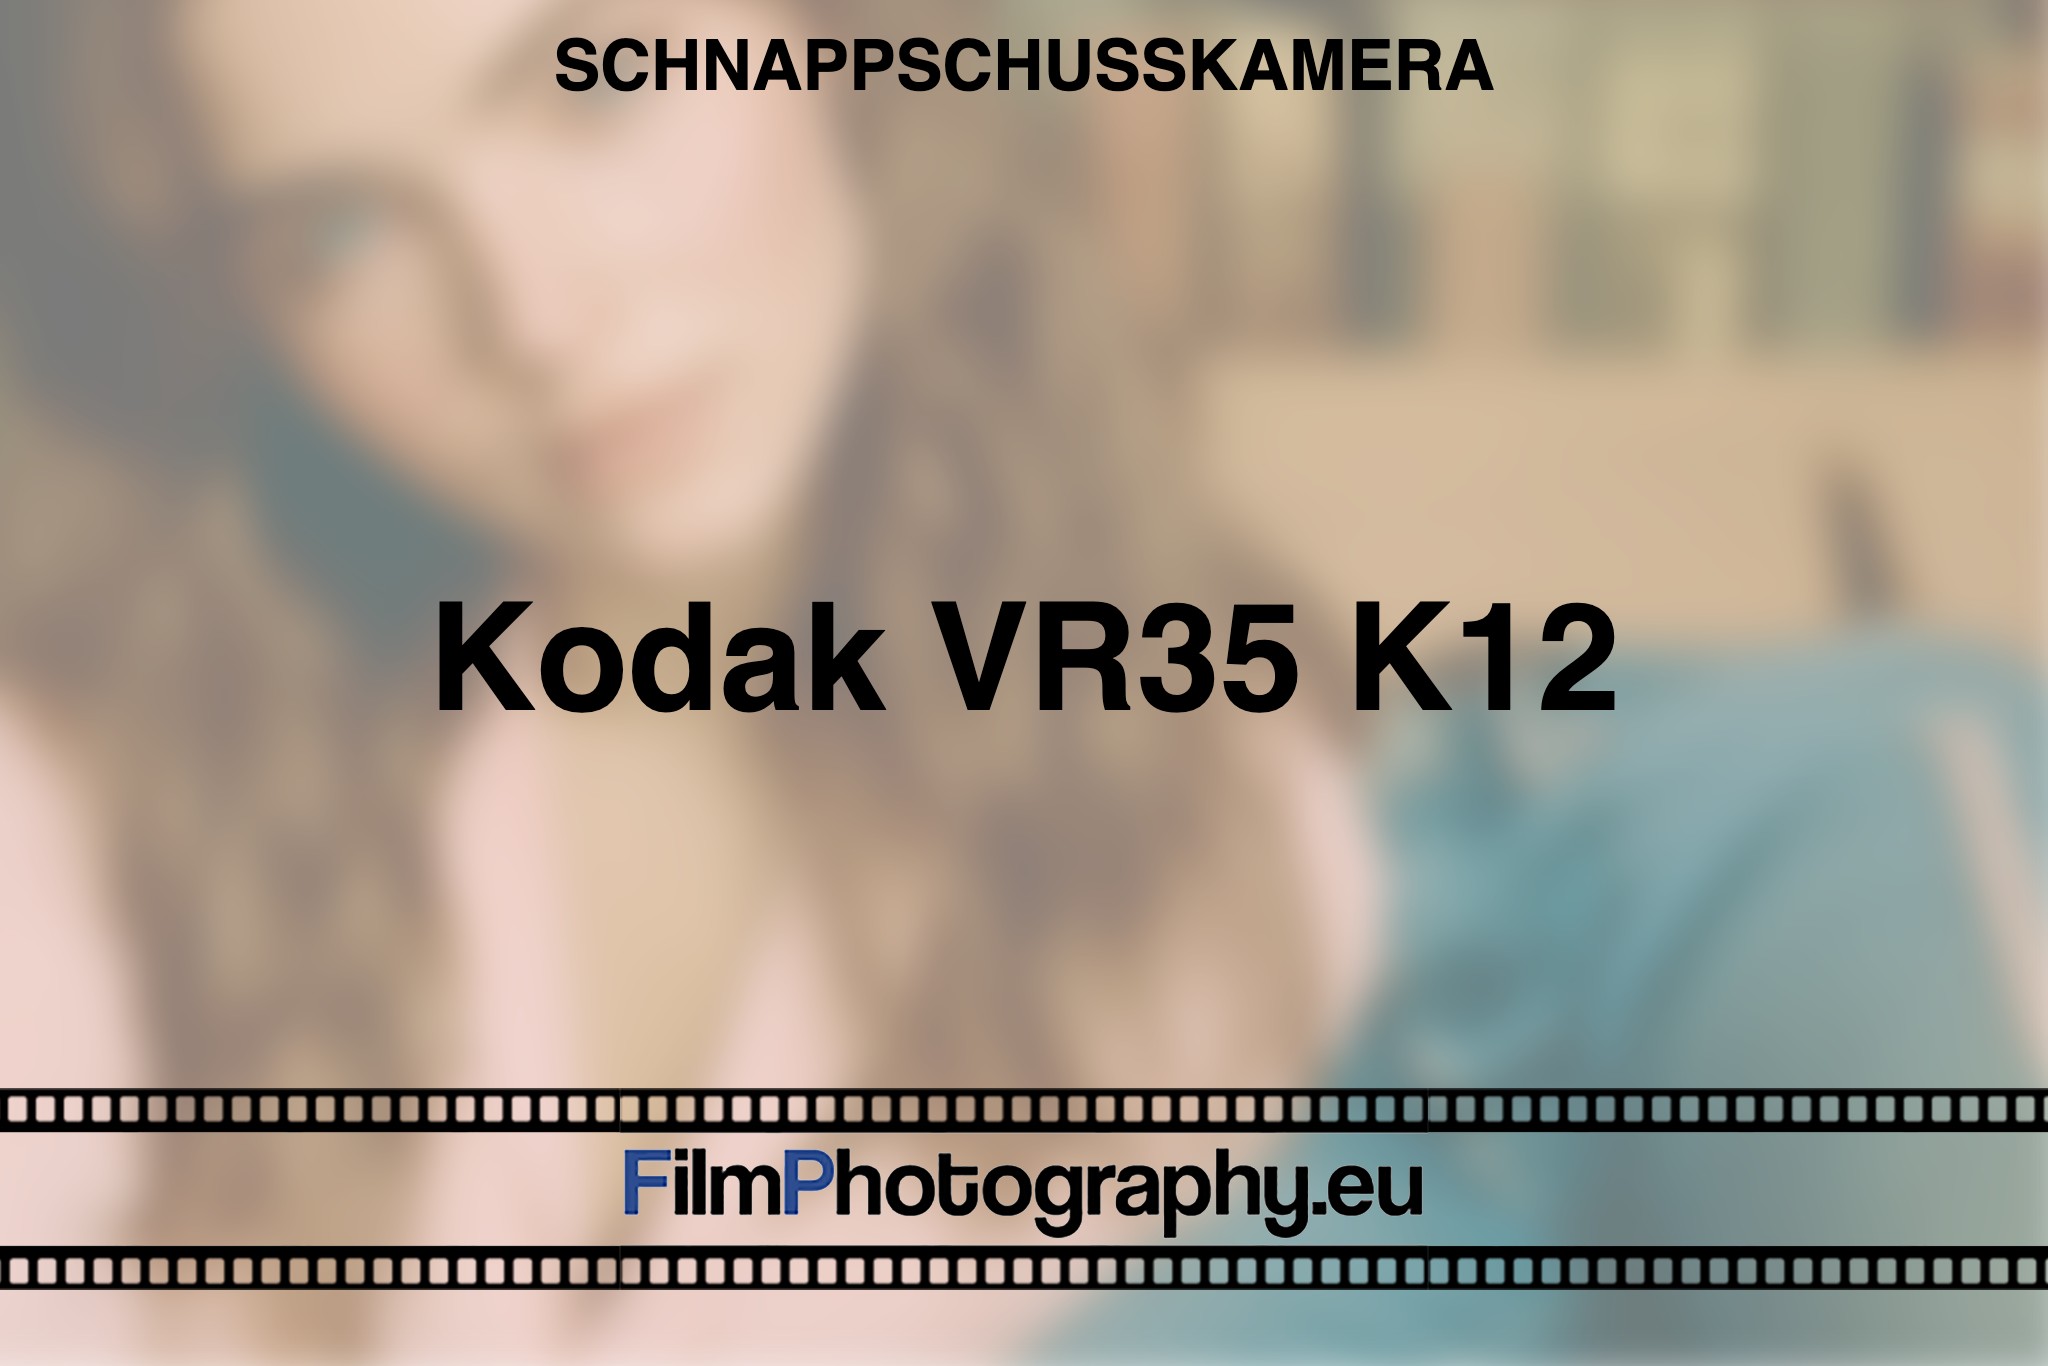 kodak-vr35-k12-schnappschusskamera-bnv